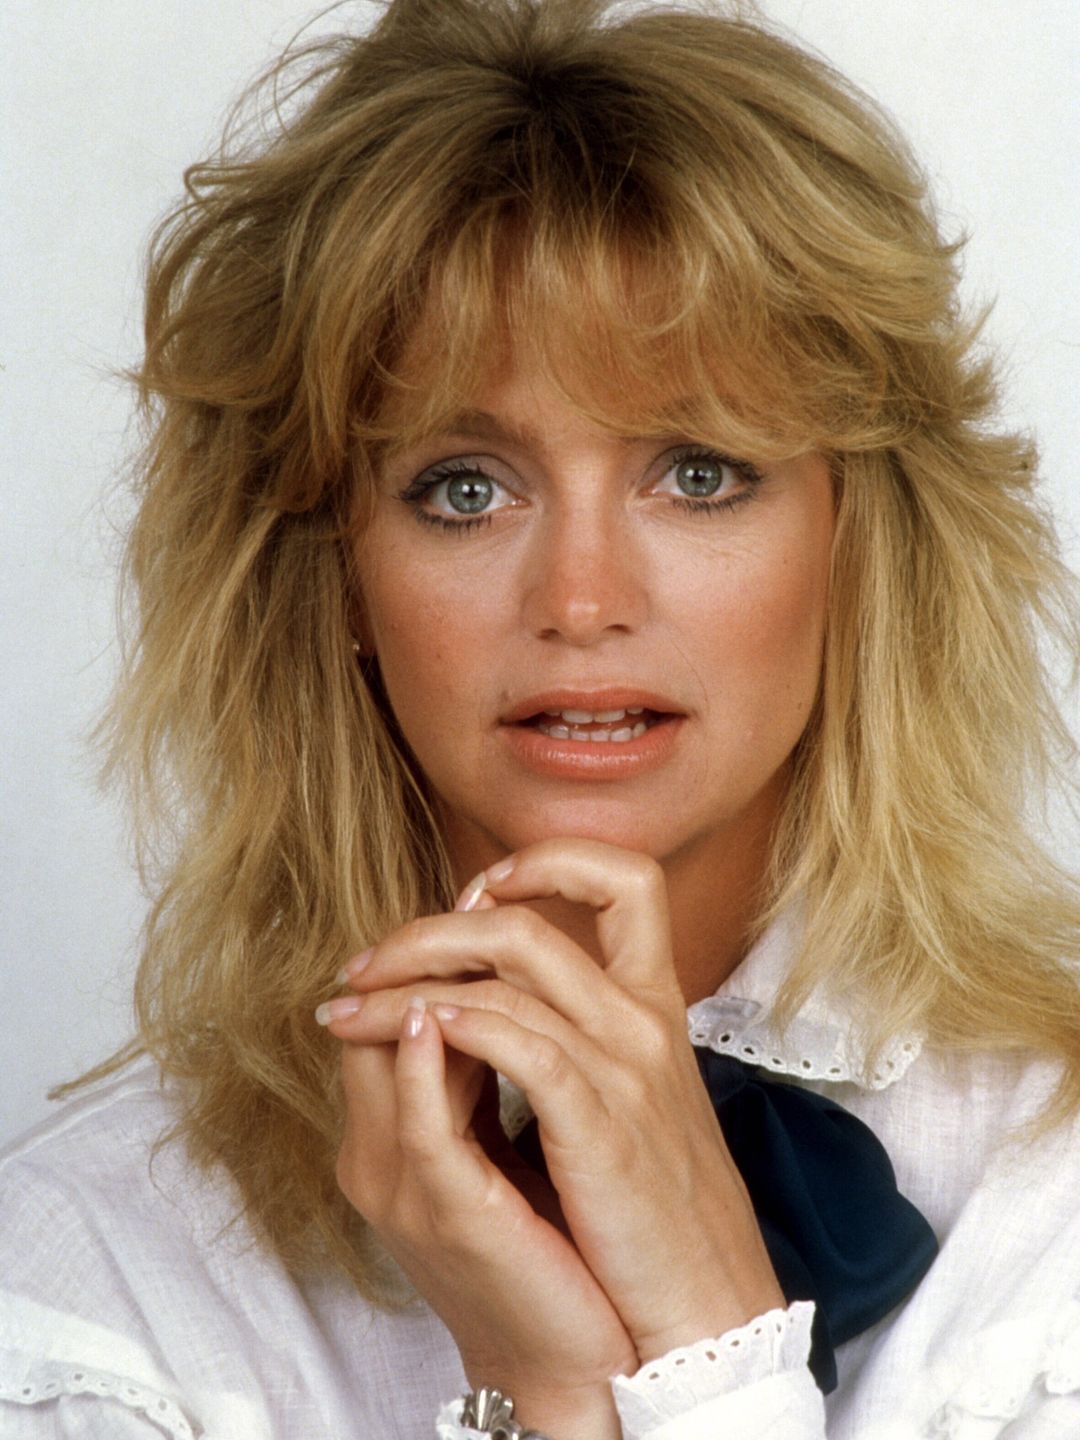 Goldie Hawn in her teens